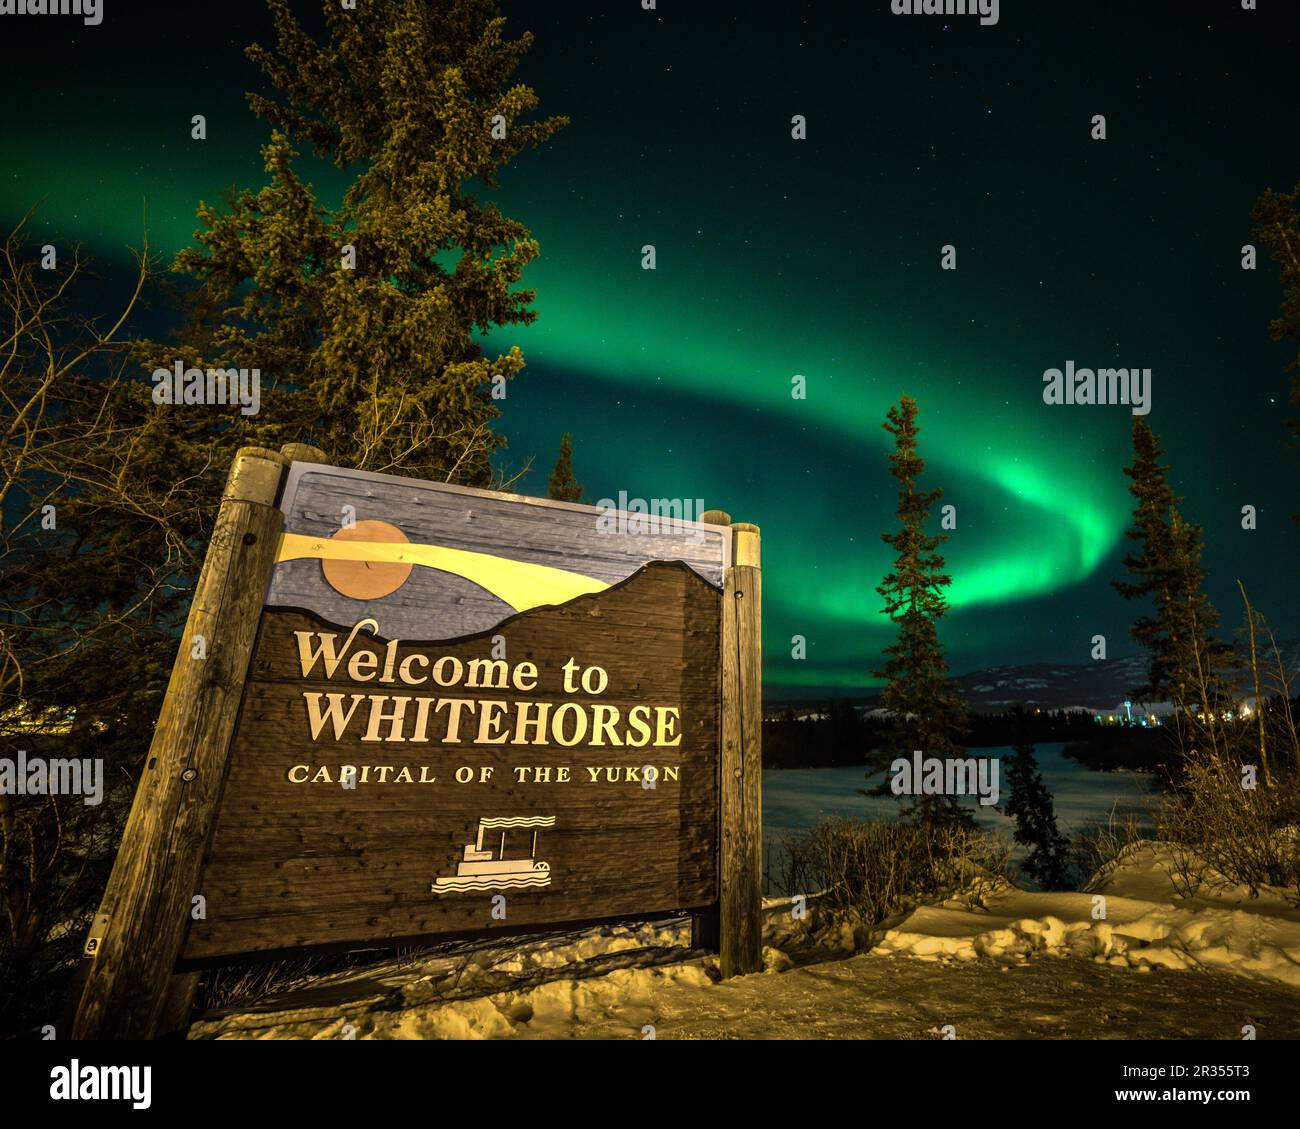 Visualizzazione dell'aurora boreale nel Canada settentrionale, territorio dello Yukon. Benvenuti al cartello Whitehorse con la band aurora borealis sopra la città selvaggia. Foto Stock